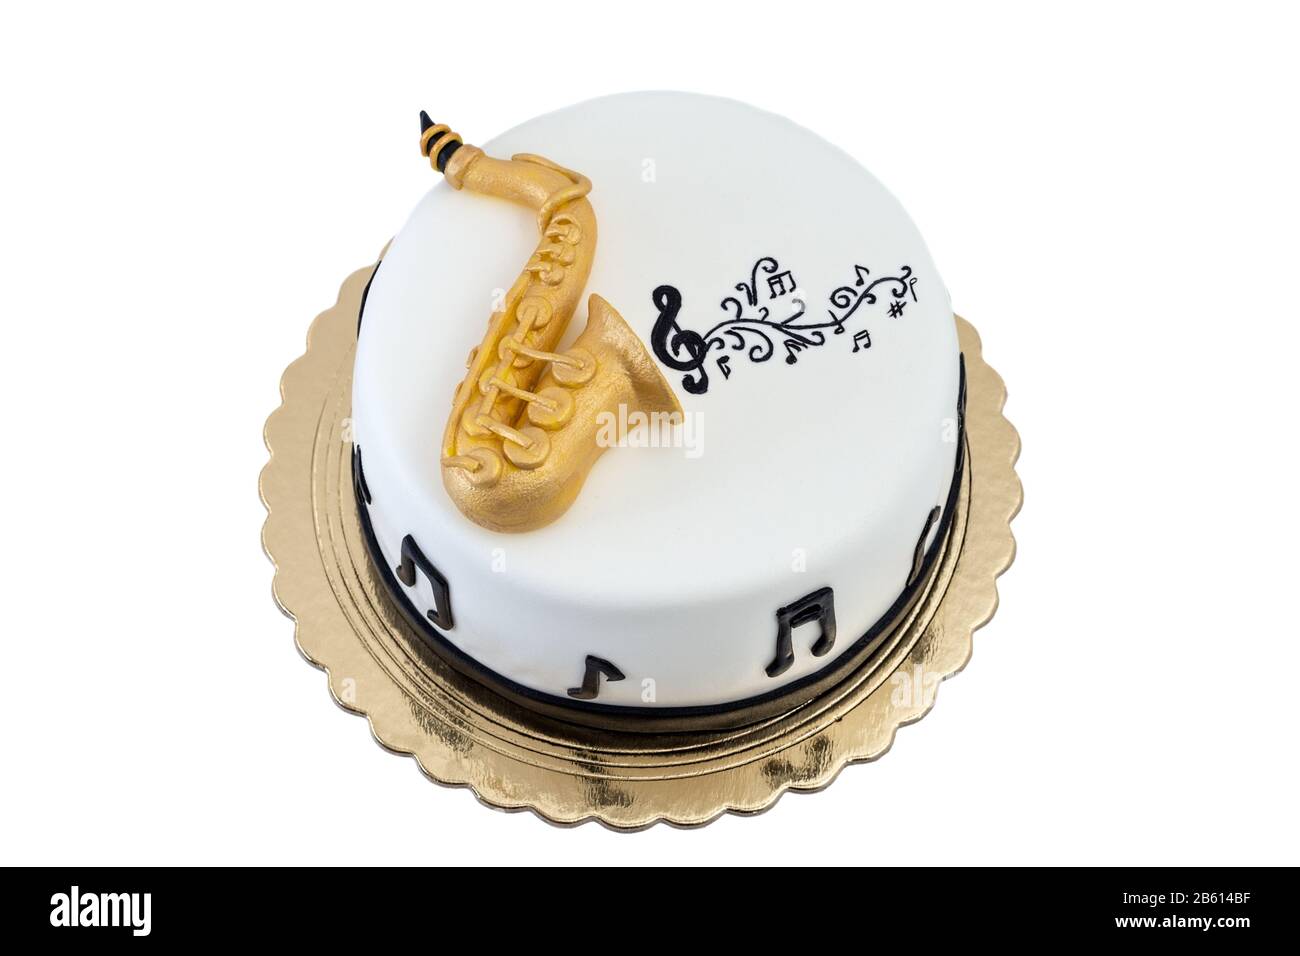 Pin on MUSIC - CAKE / FOOD ART +